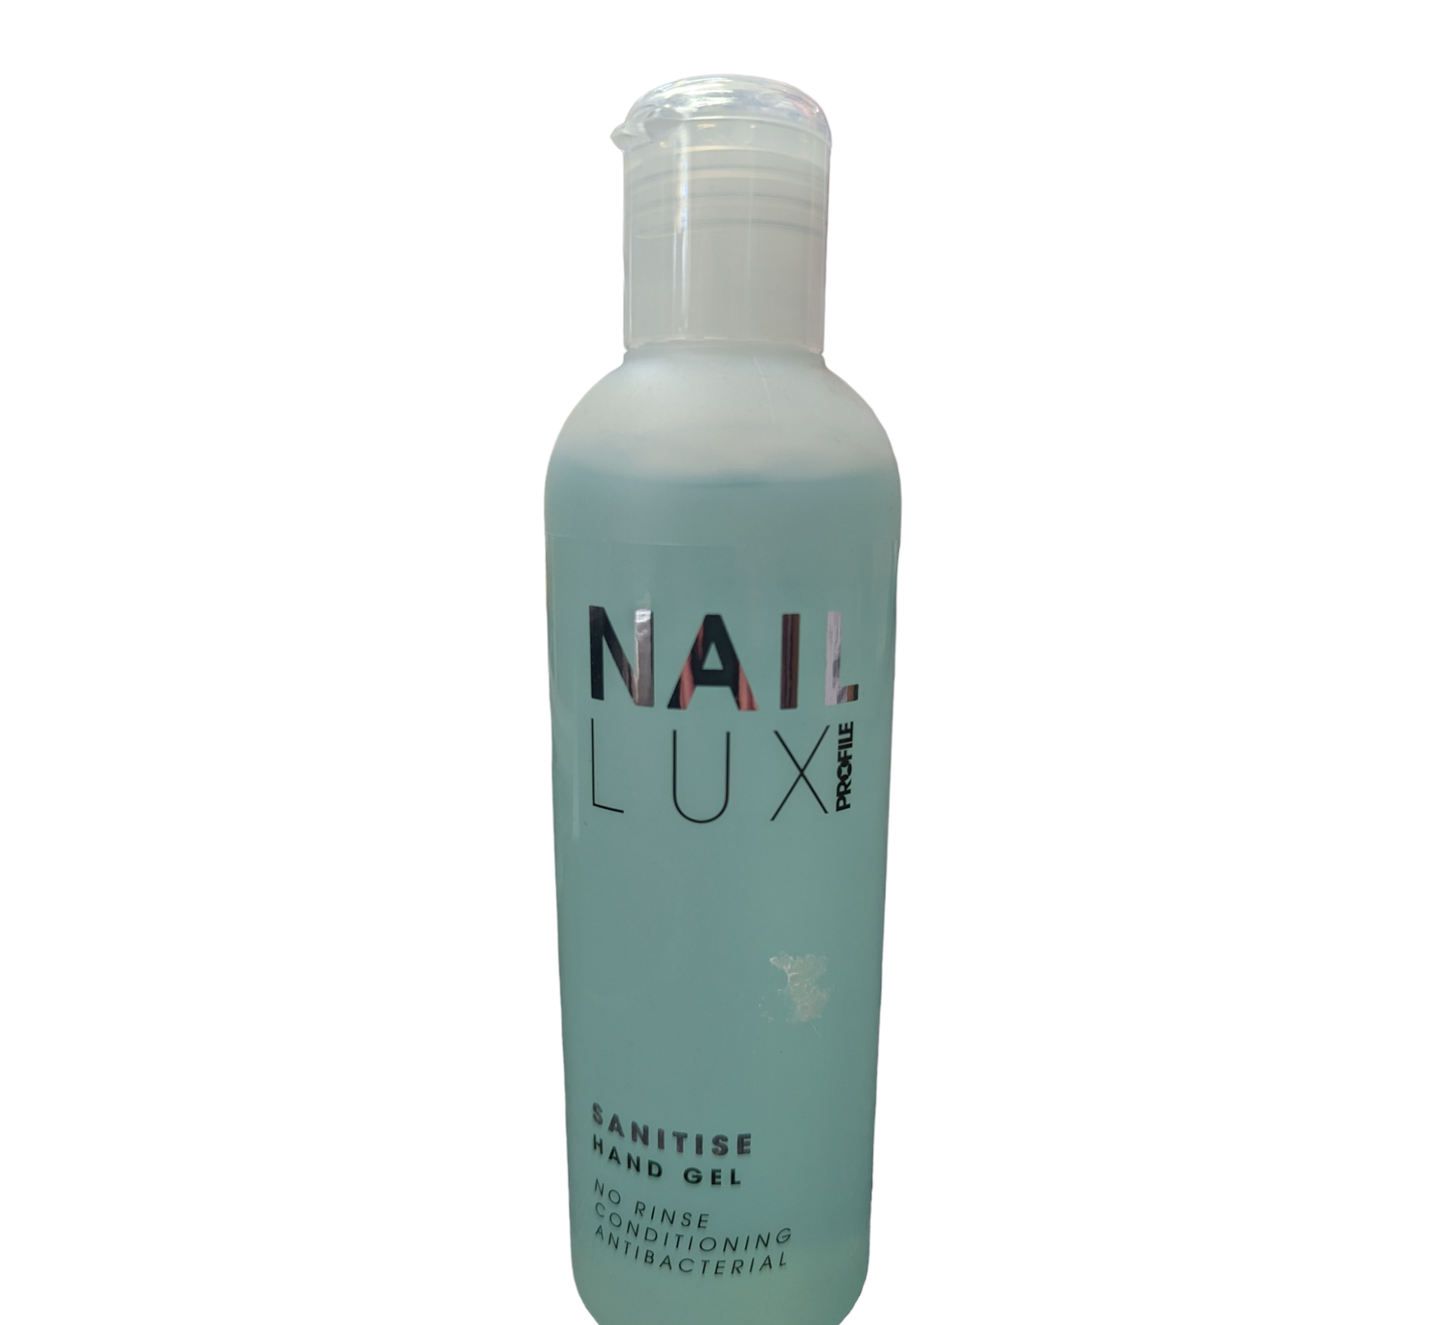 Nail Lux sanitise gel